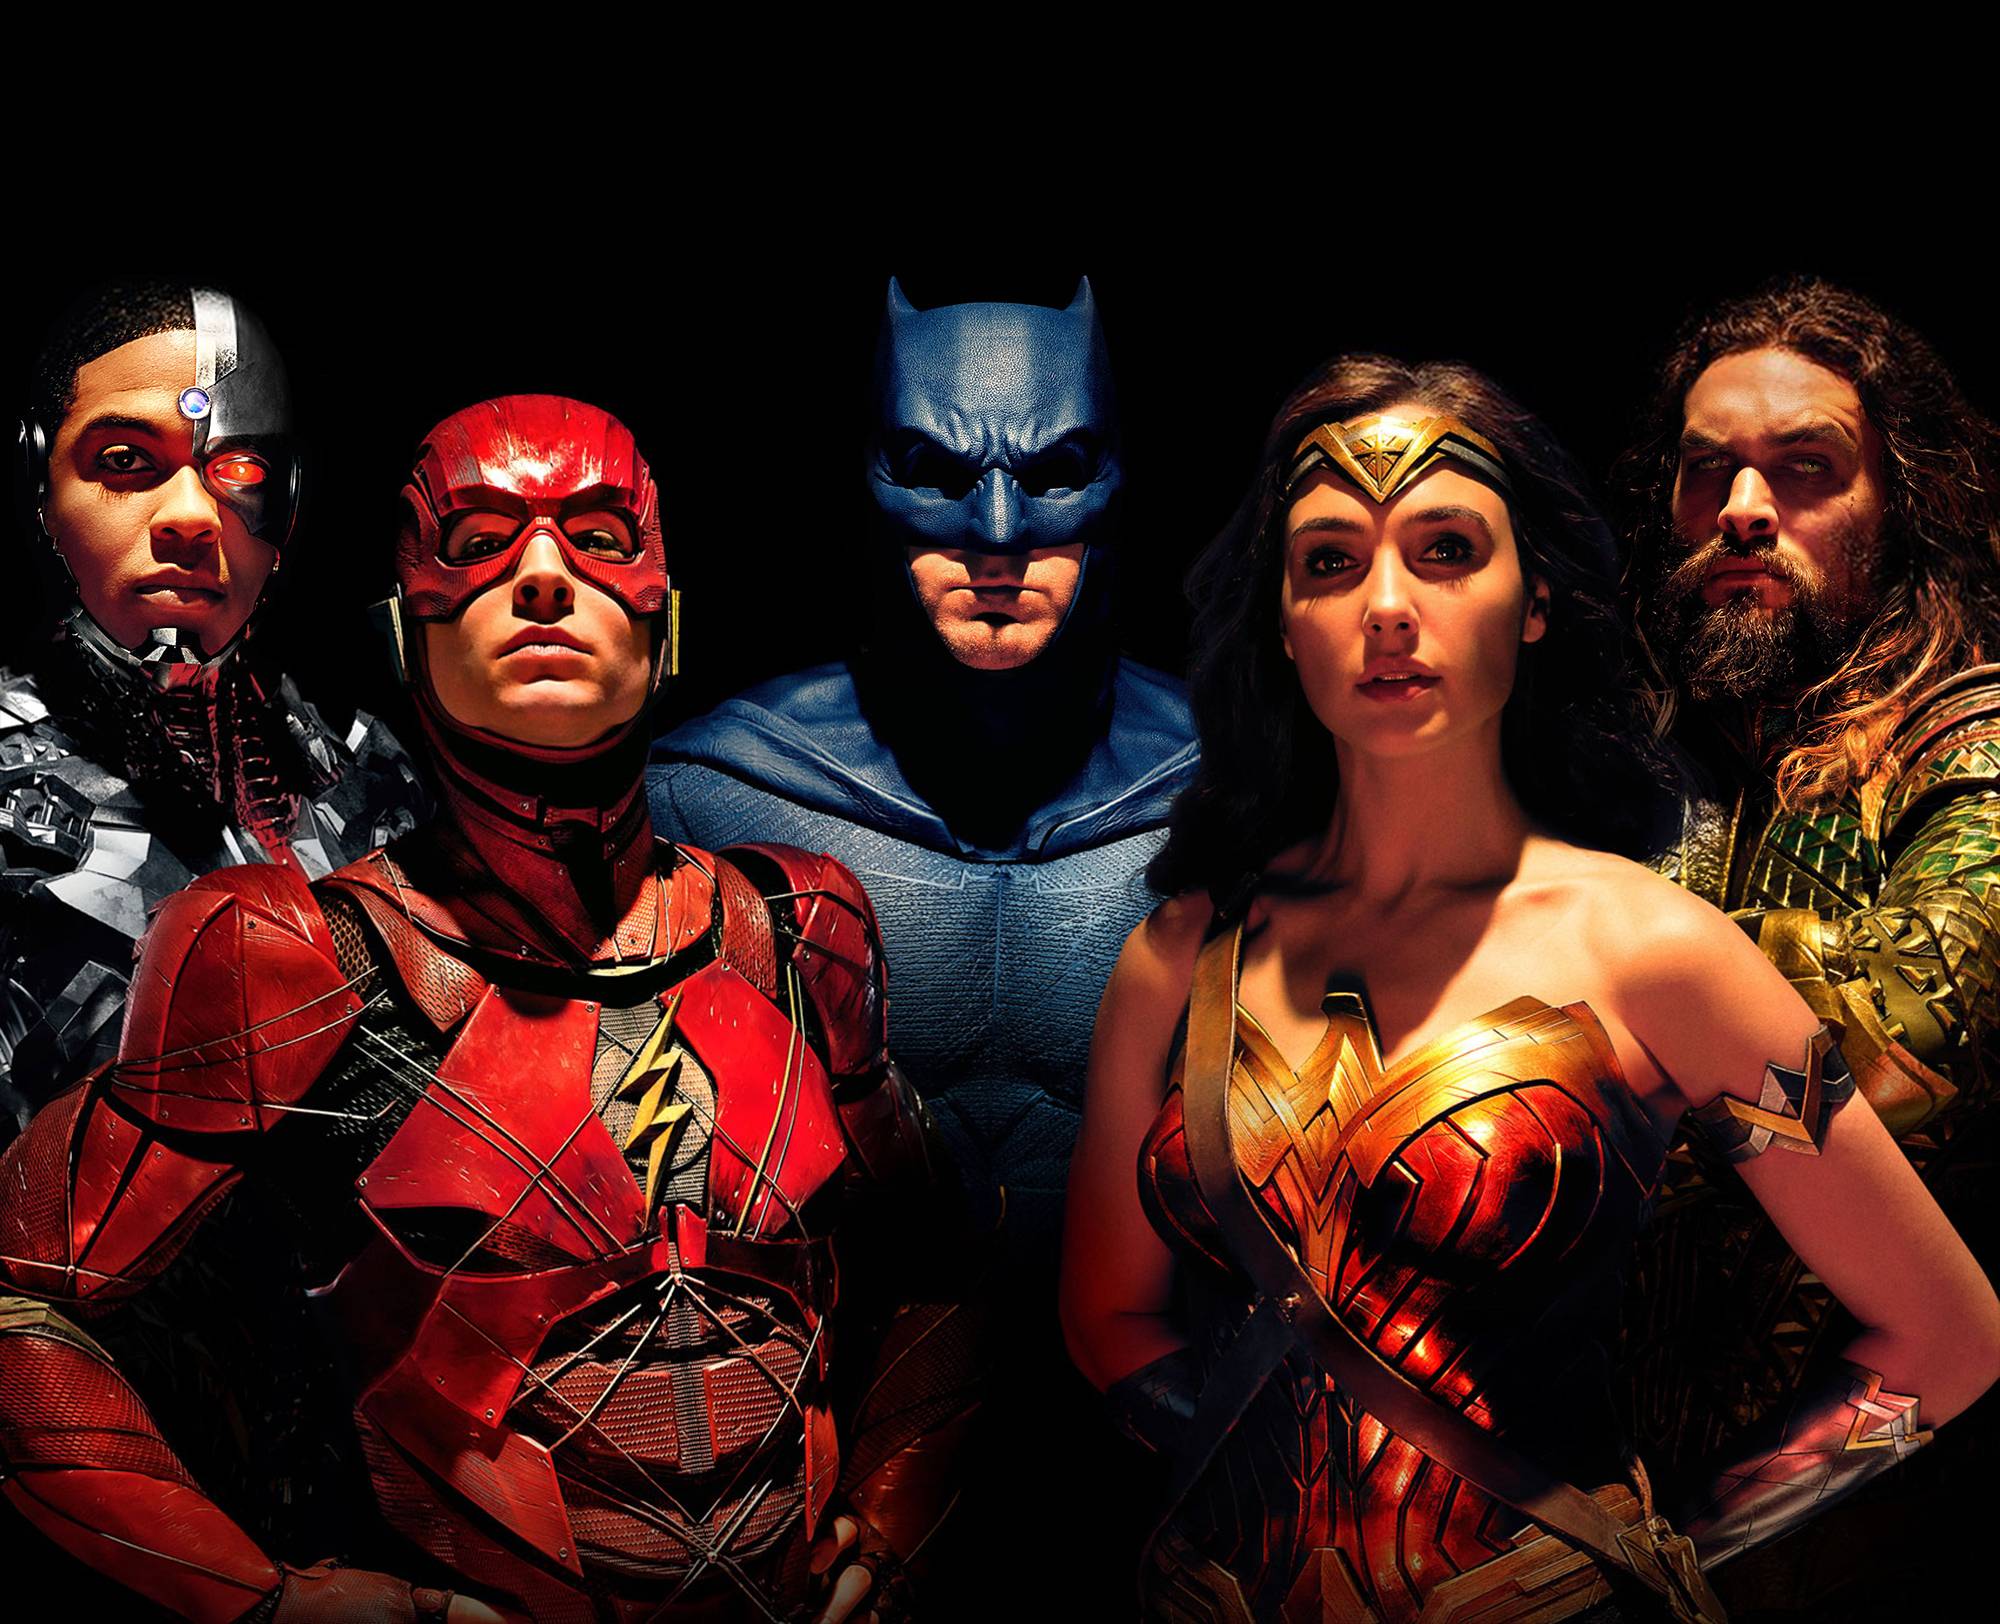 justice league fond d'écran hd,super héros,personnage fictif,ligue de justice,film,héros